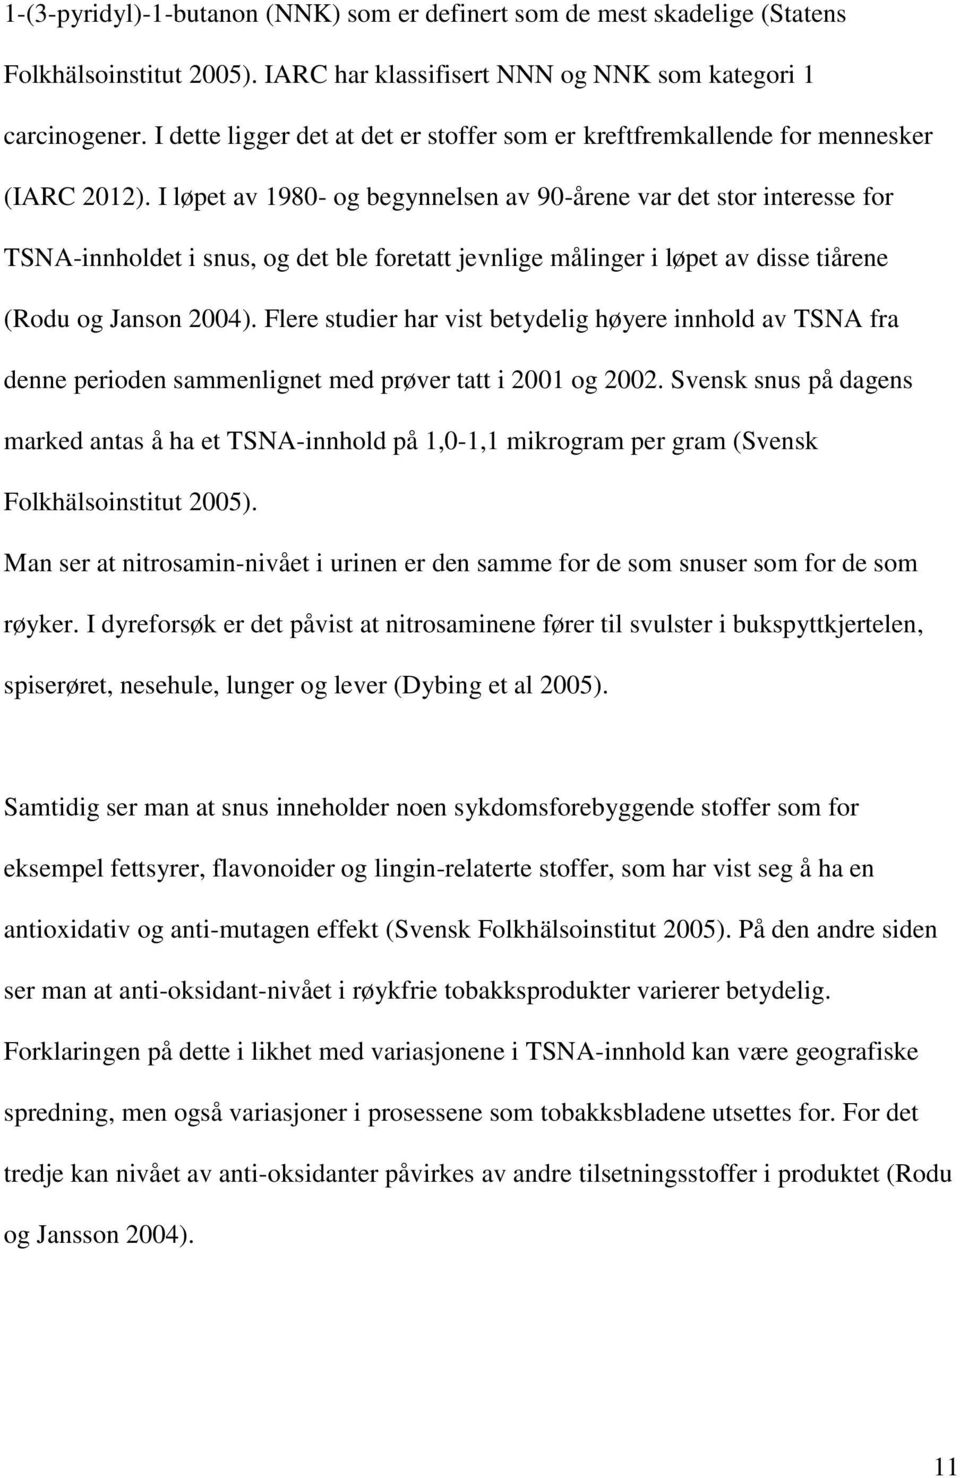 I løpet av 1980- og begynnelsen av 90-årene var det stor interesse for TSNA-innholdet i snus, og det ble foretatt jevnlige målinger i løpet av disse tiårene (Rodu og Janson 2004).